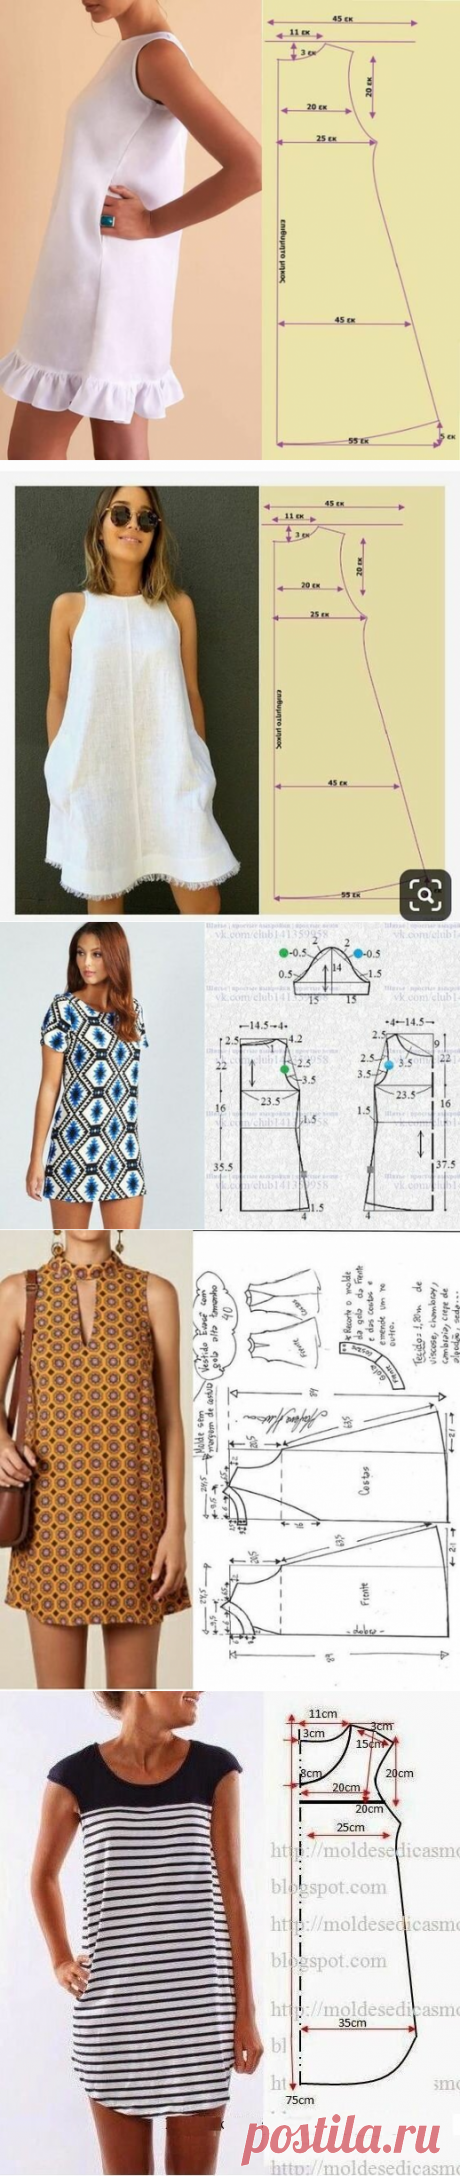 БЕРИ И ШЕЙ: Из одной простой выкройки шьем 5 разных моделей летнего платья. | Швейный омут | Яндекс Дзен